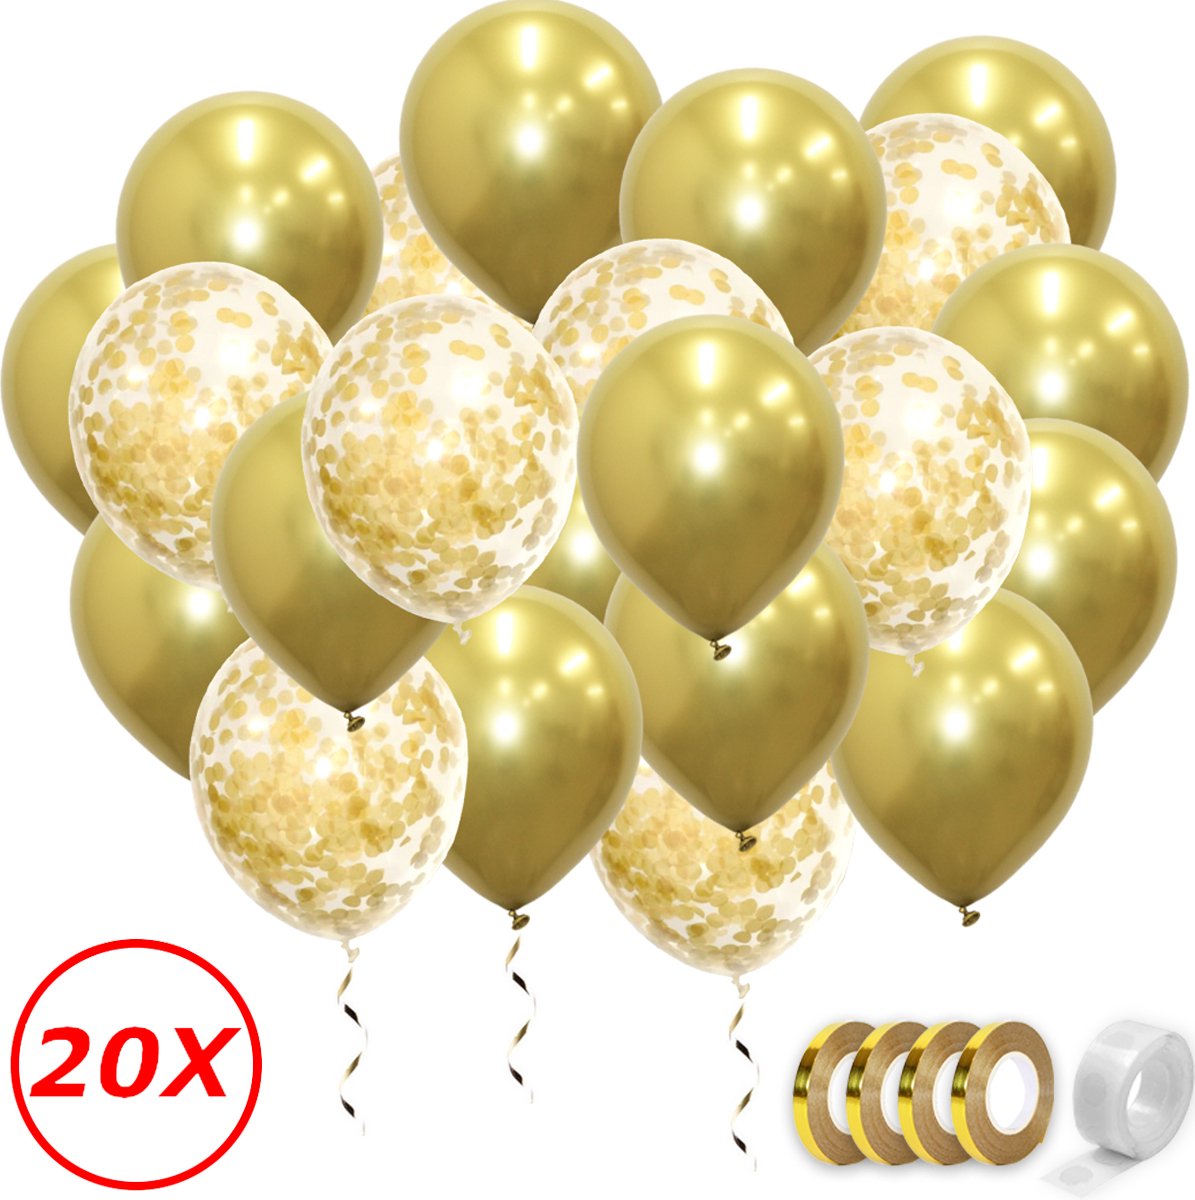 Fissaly® 40 pièces Ballons à l'hélium or, noir et blanc avec ruban